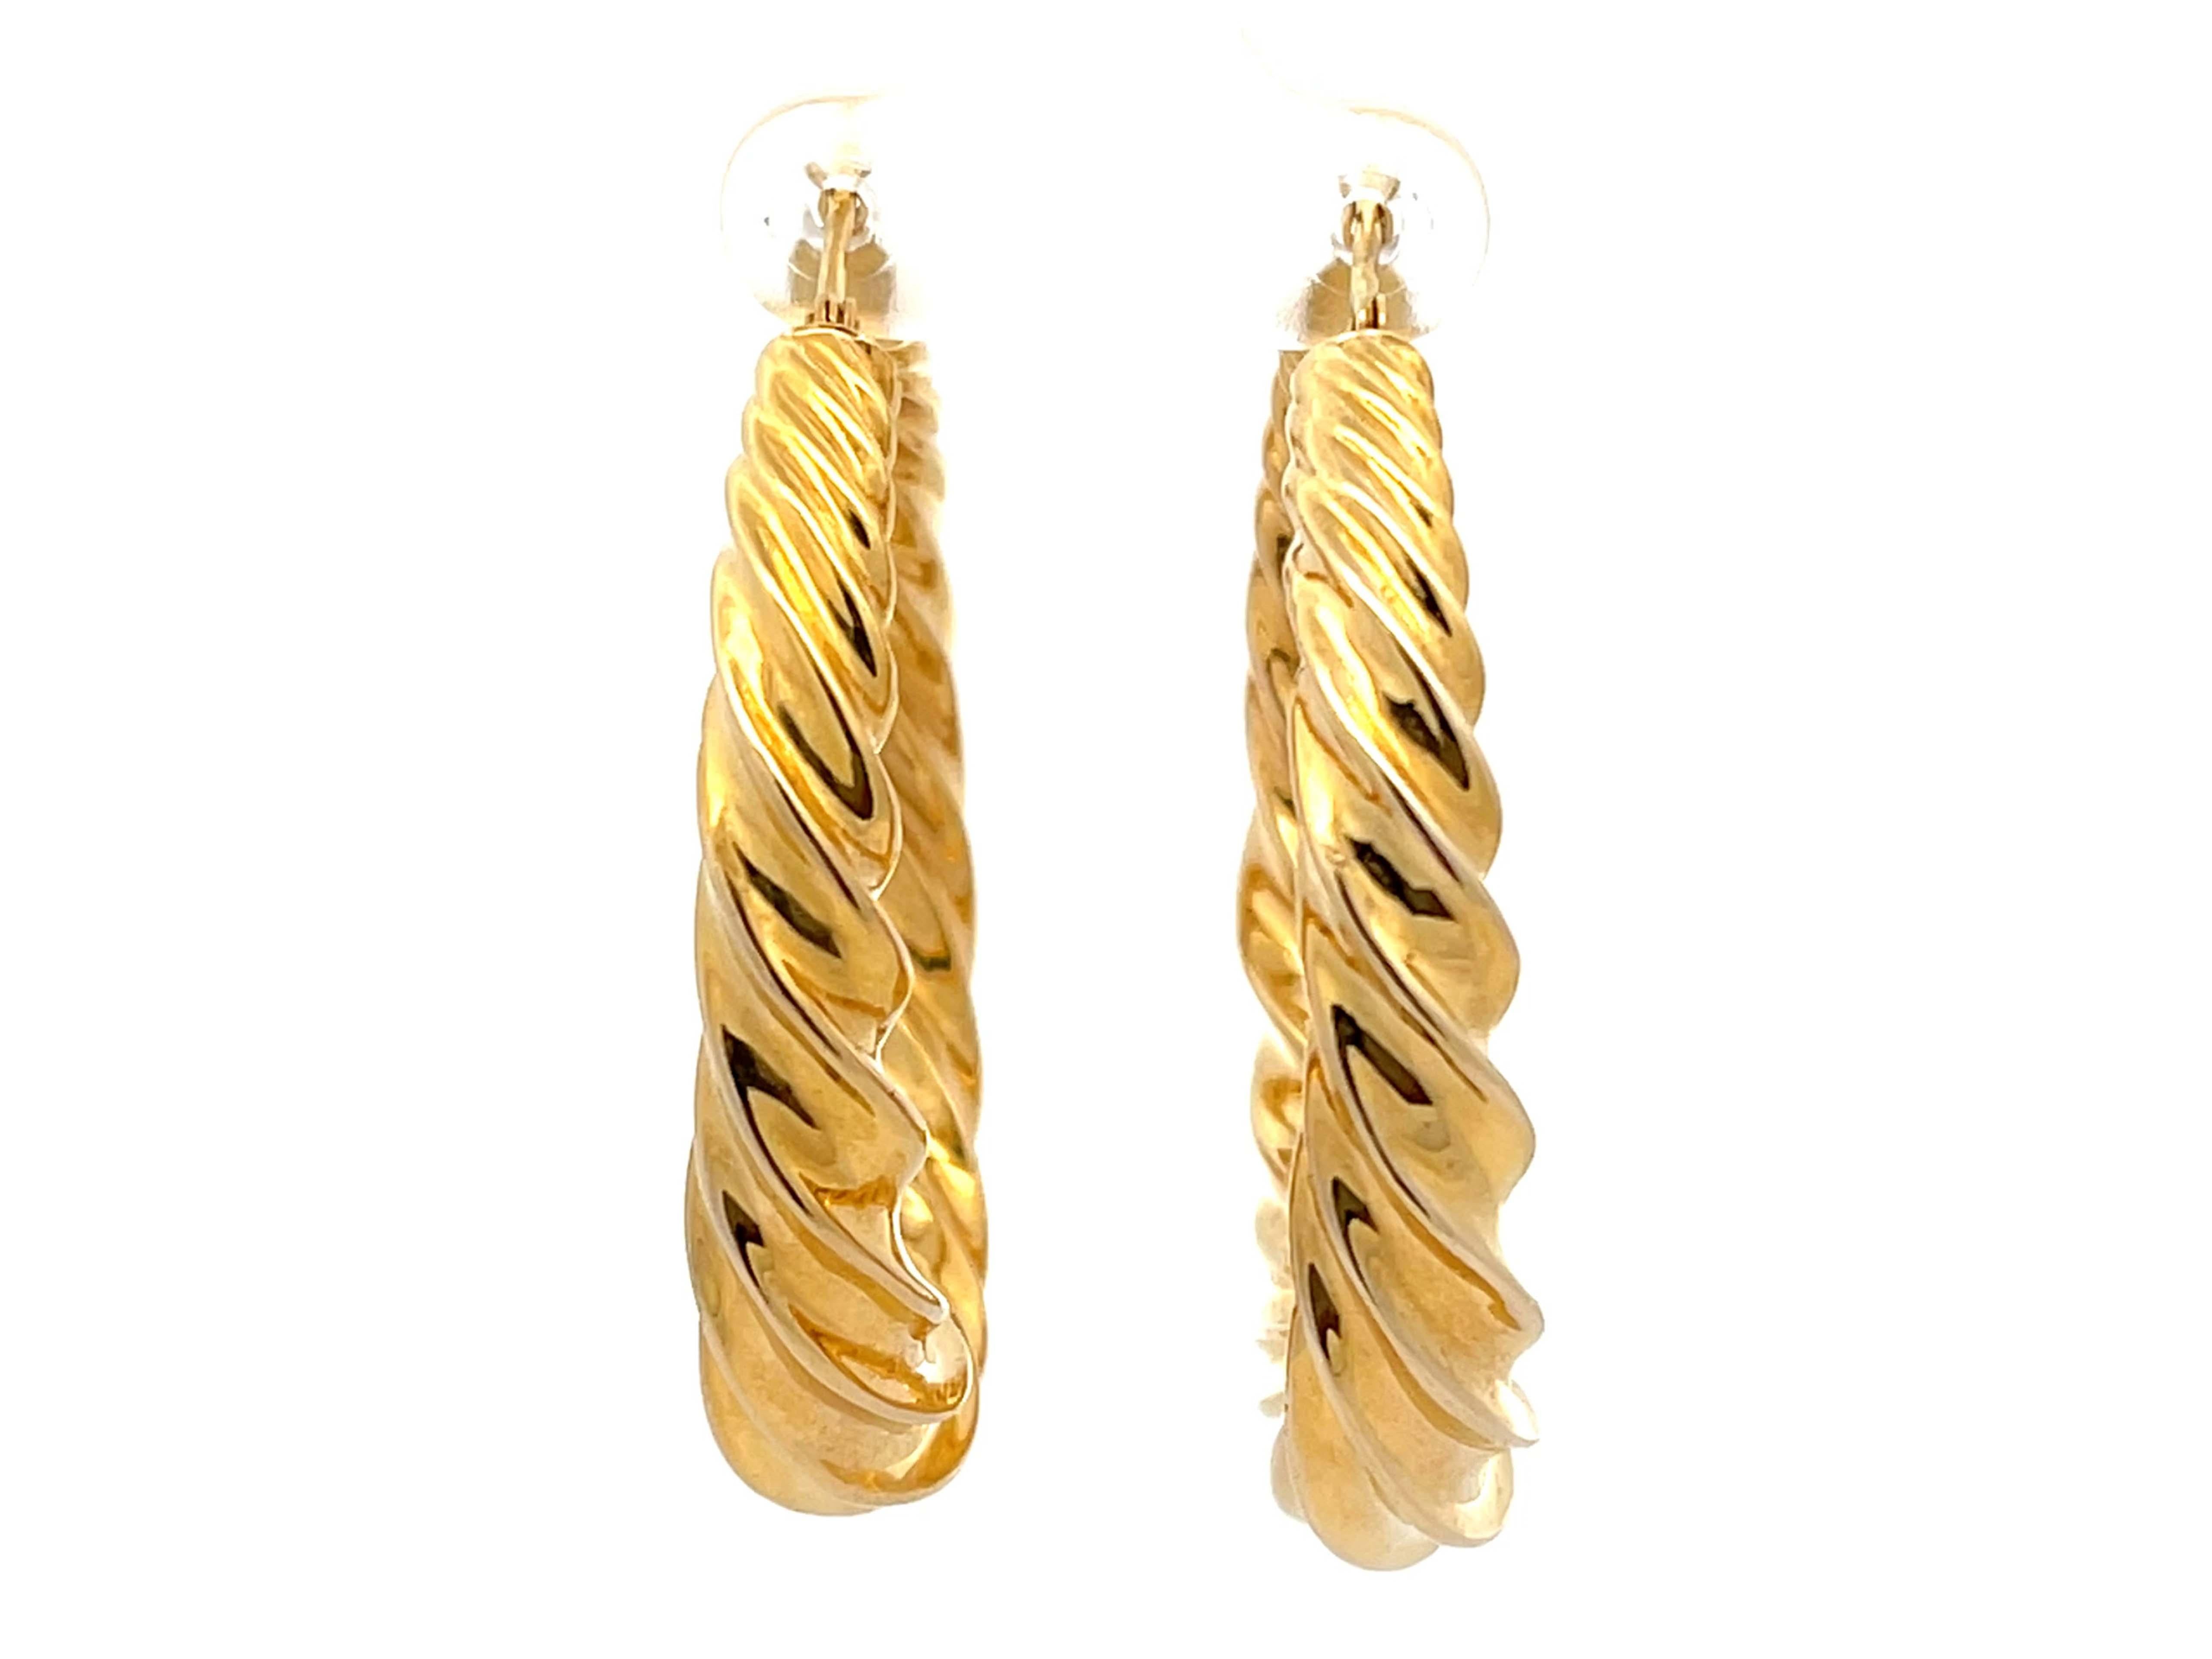 Modern Twisted Hoop Earrings in 18k Yellow Gold